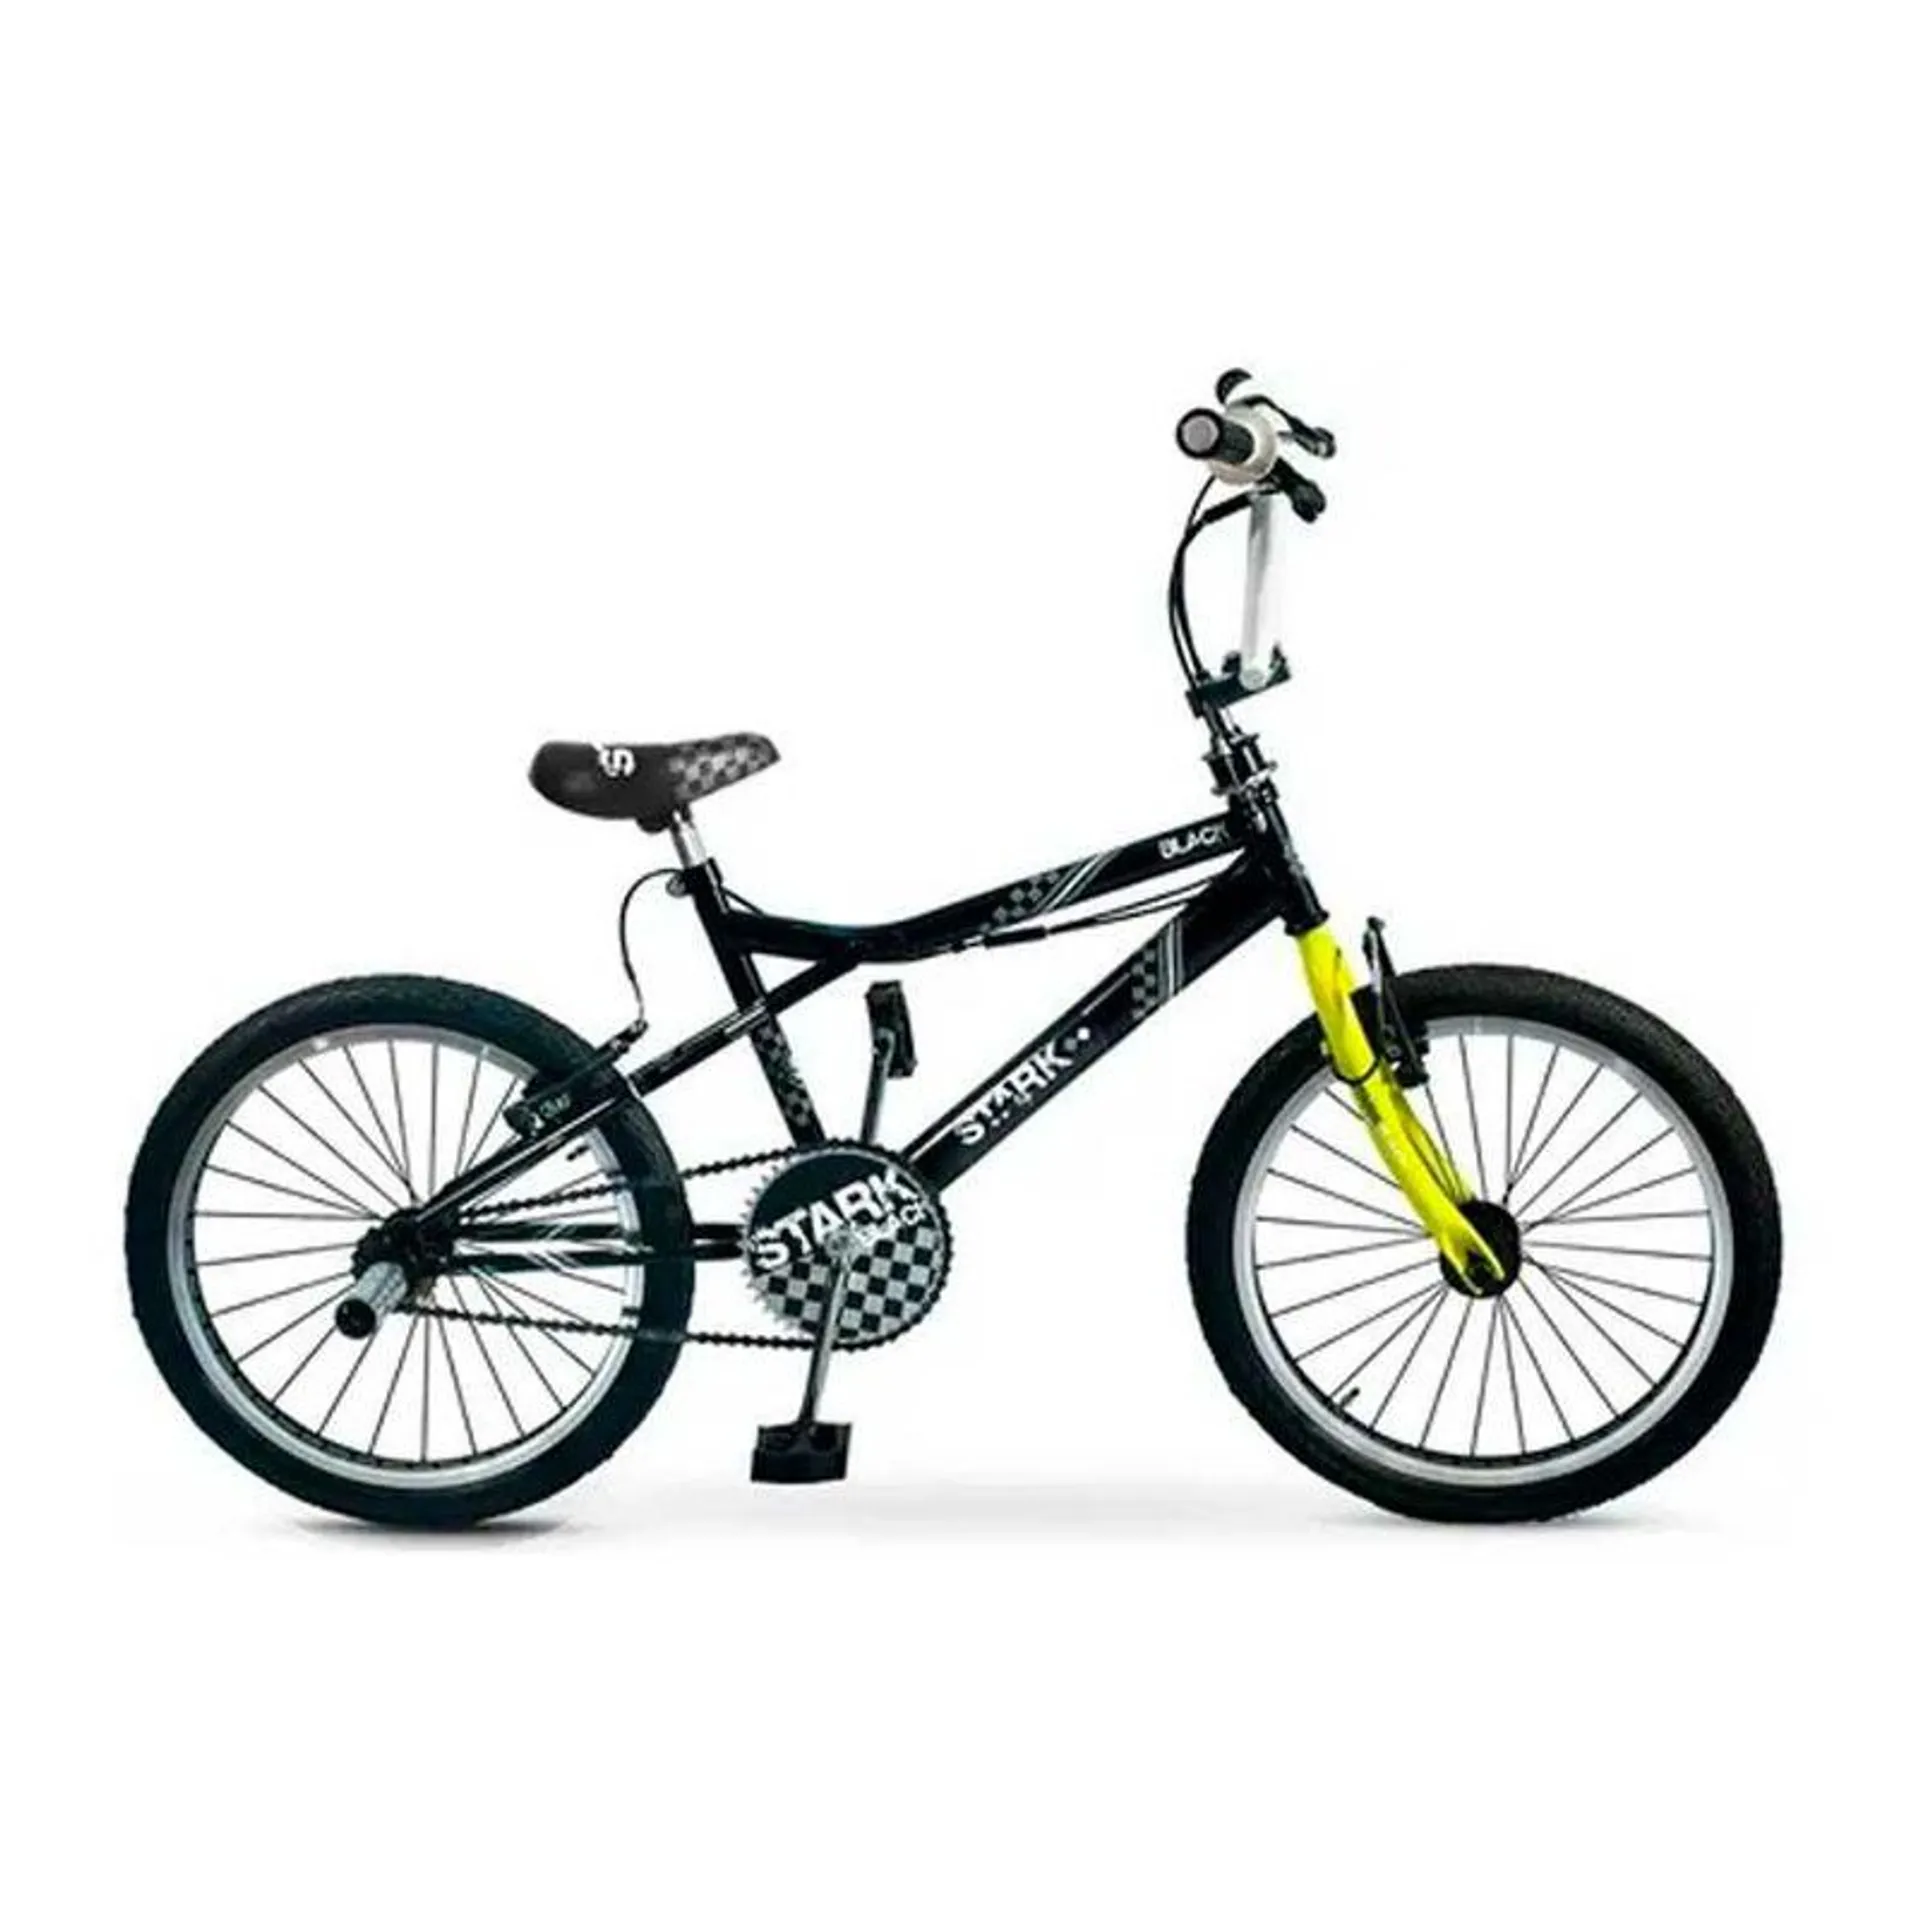 Bicicleta Niño 6078 R20 Acero